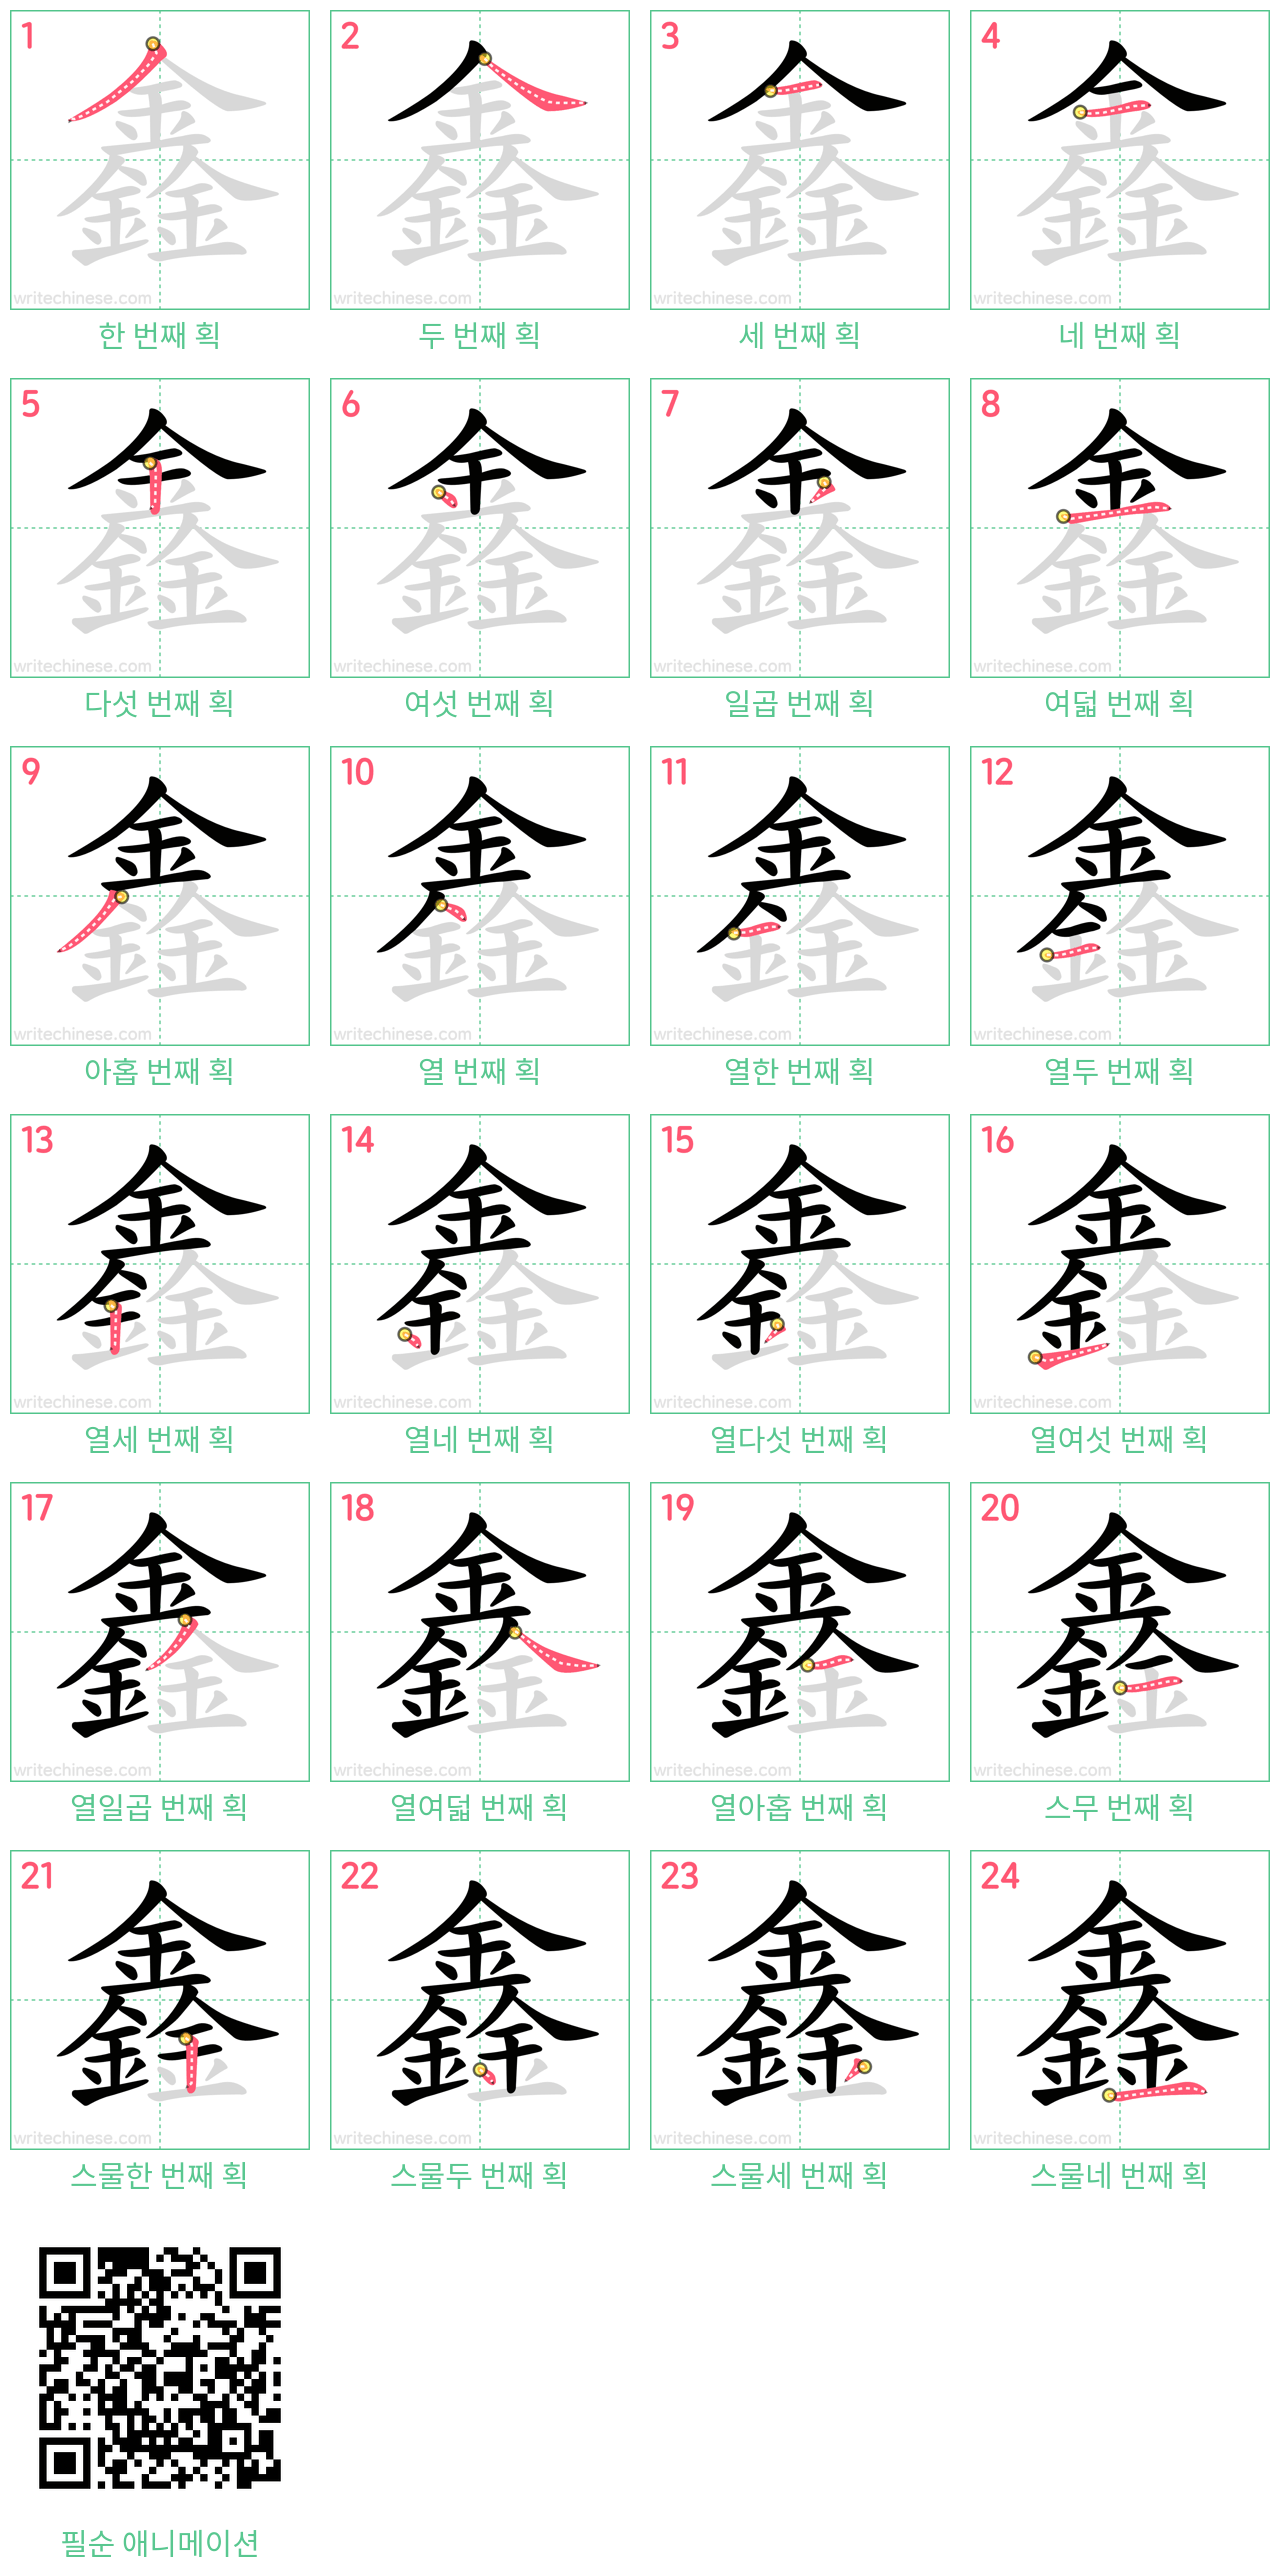 鑫 step-by-step stroke order diagrams